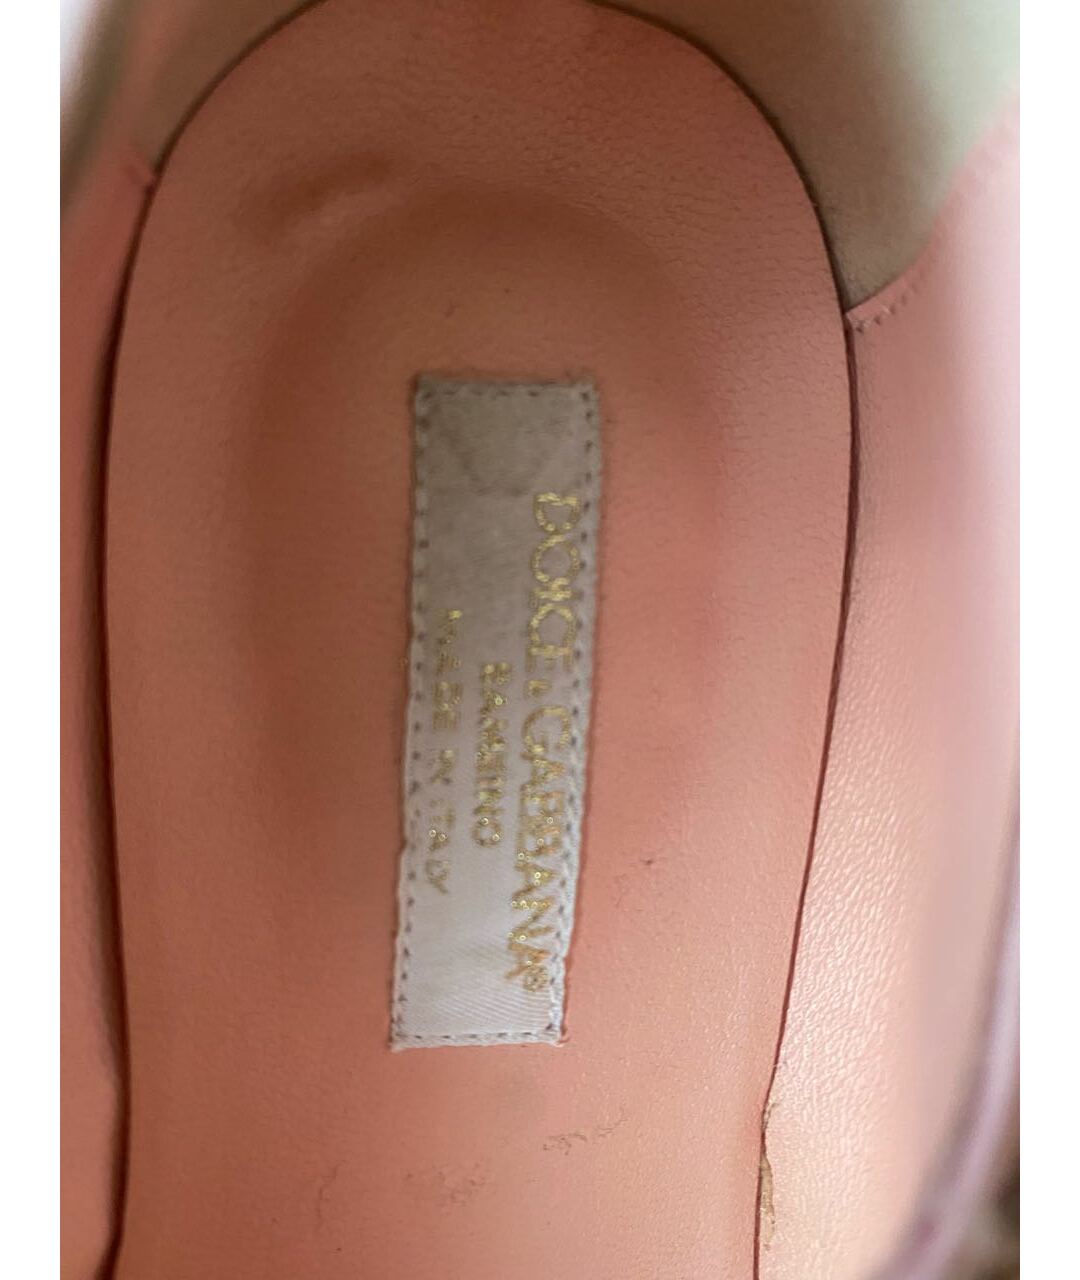 DOLCE&GABBANA Розовые текстильные туфли, фото 5